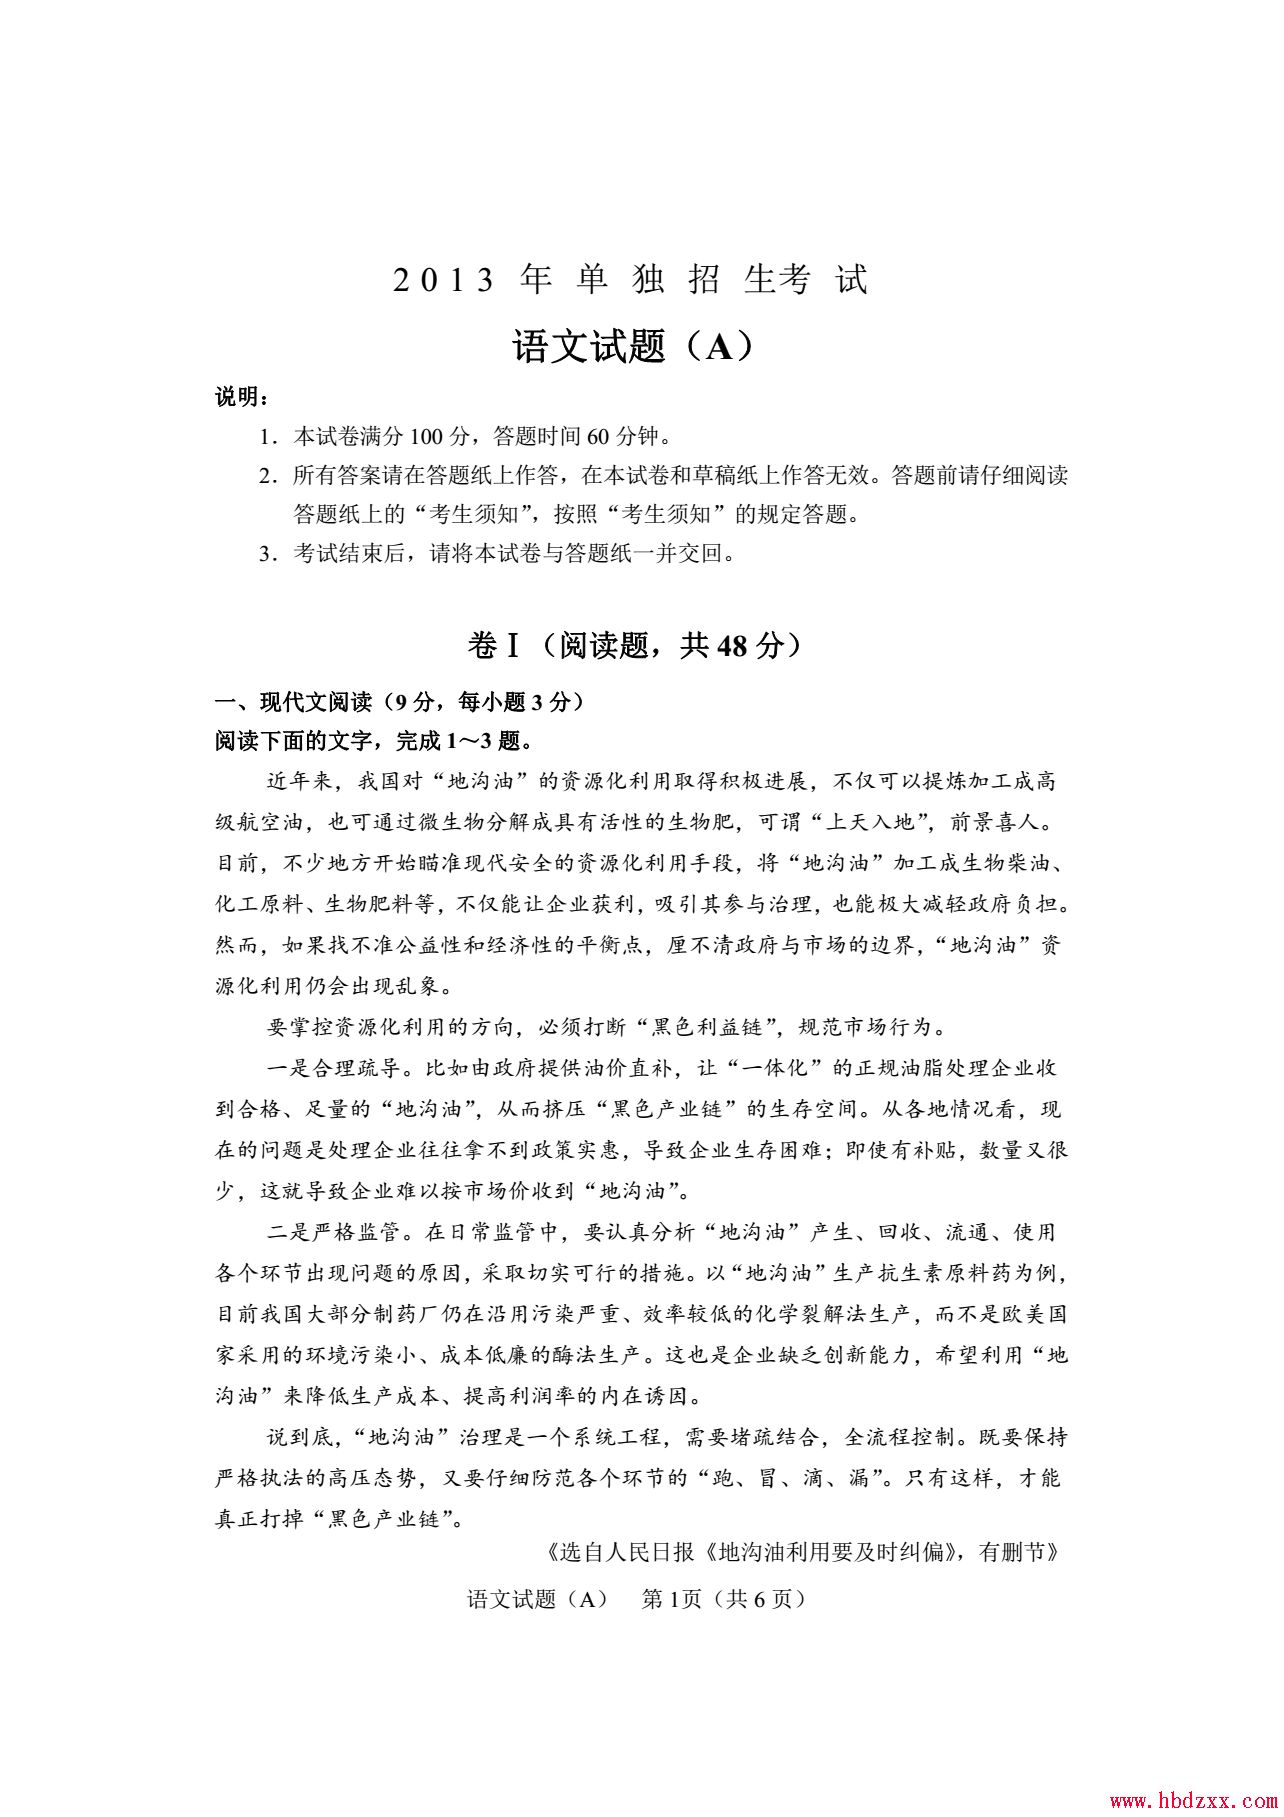 石家庄铁路职业技术学院2013年语文单招试题